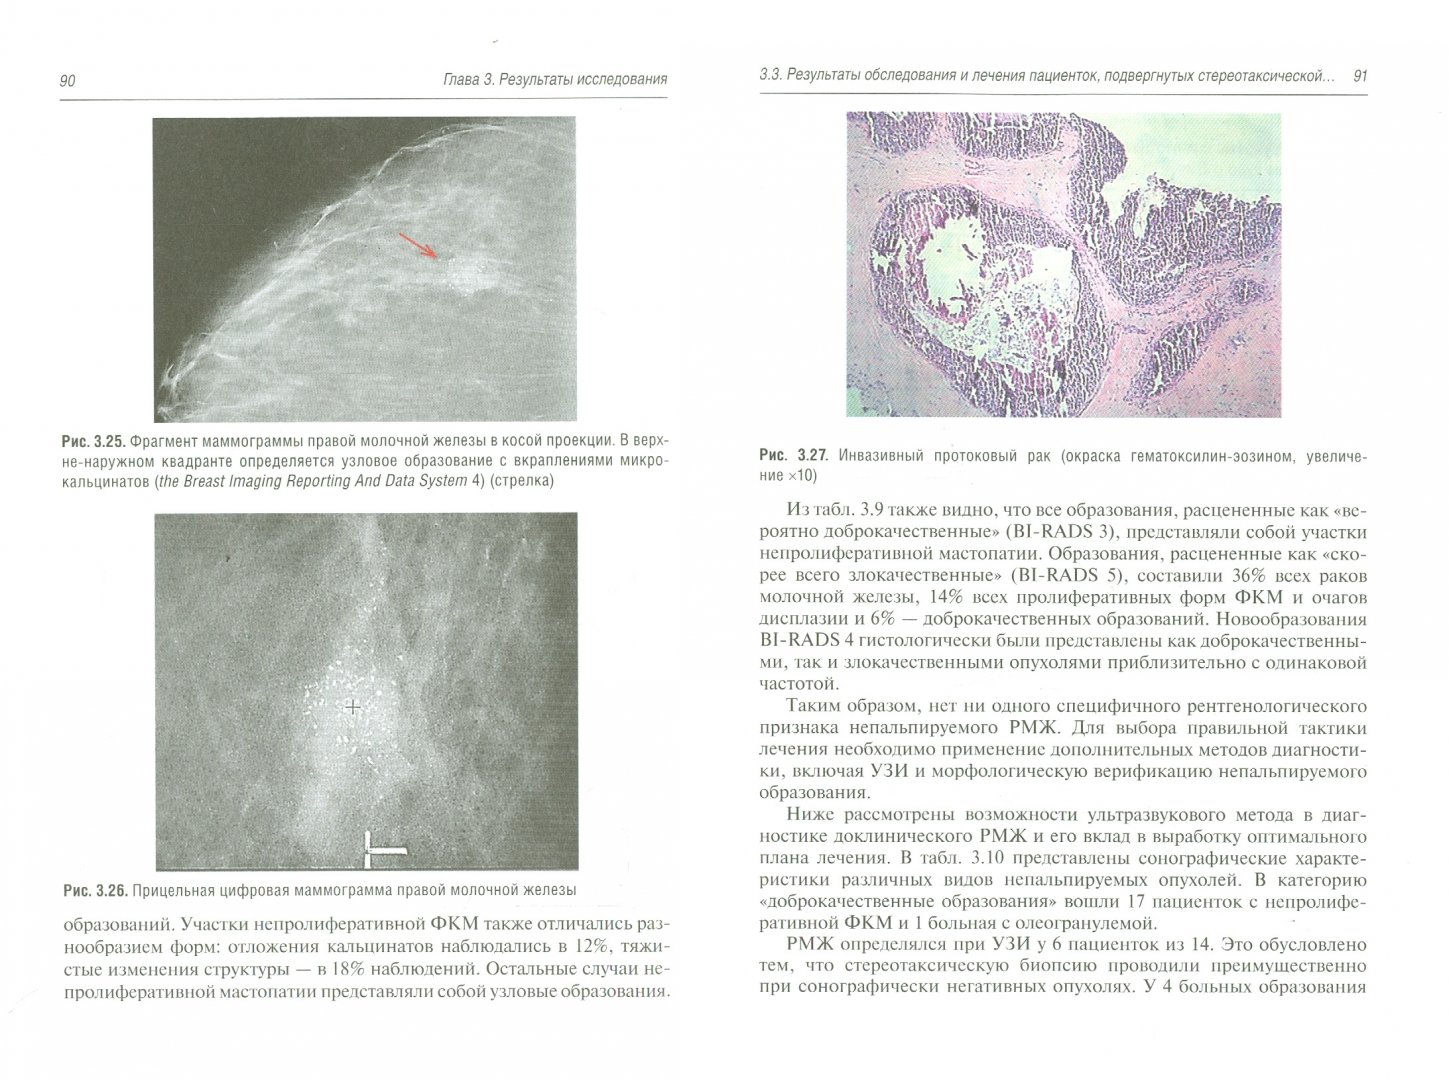 Иллюстрация 1 из 5 для Непальпируемые опухоли молочных желез - Куликов, Загалаев | Лабиринт - книги. Источник: Лабиринт